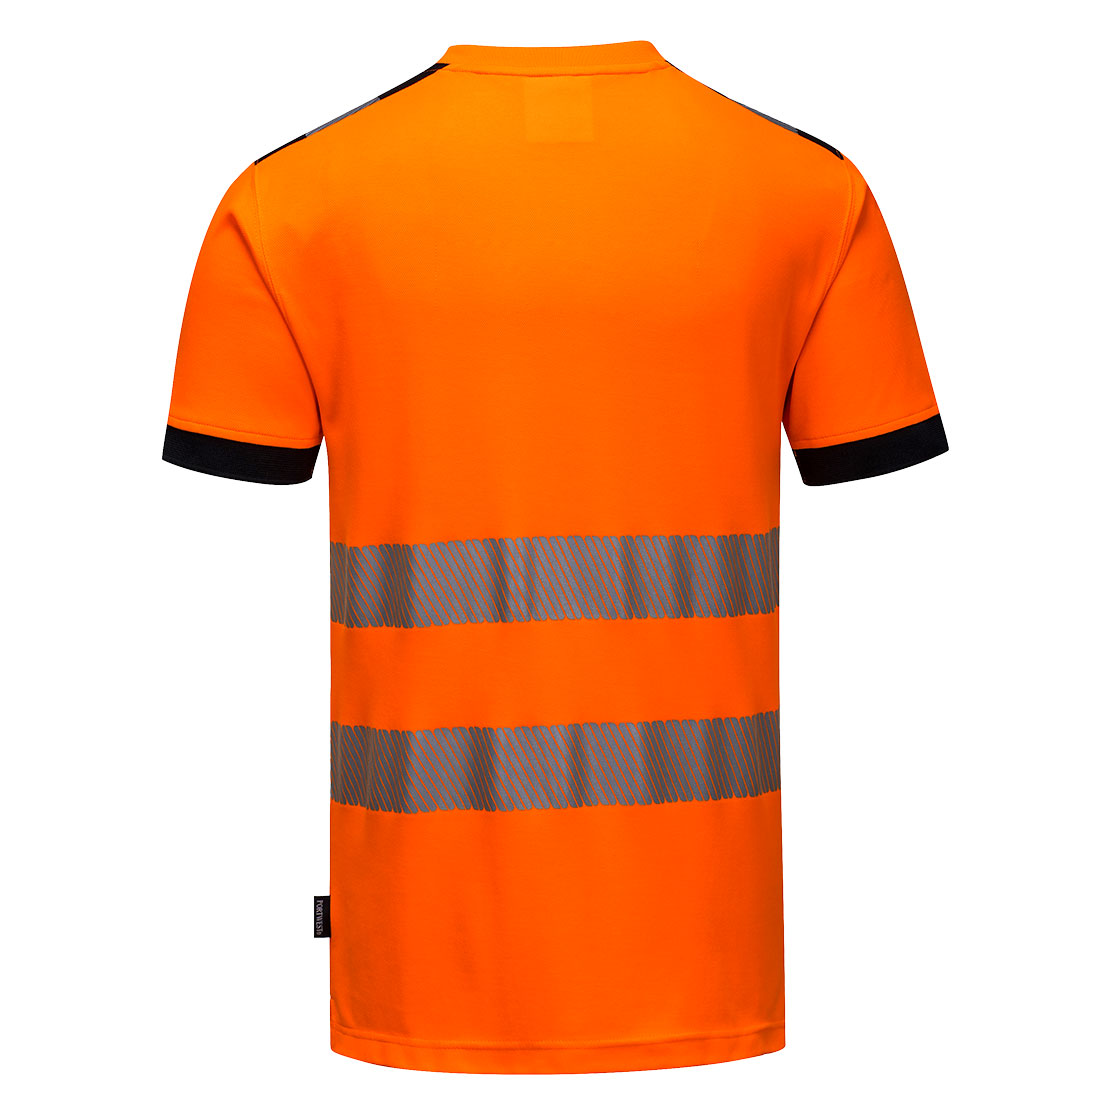 camiseta-naranja-alta-visibilidad-con-cinta-reflectiva-espalda-T181-cental-de-suministrosgs.jpg